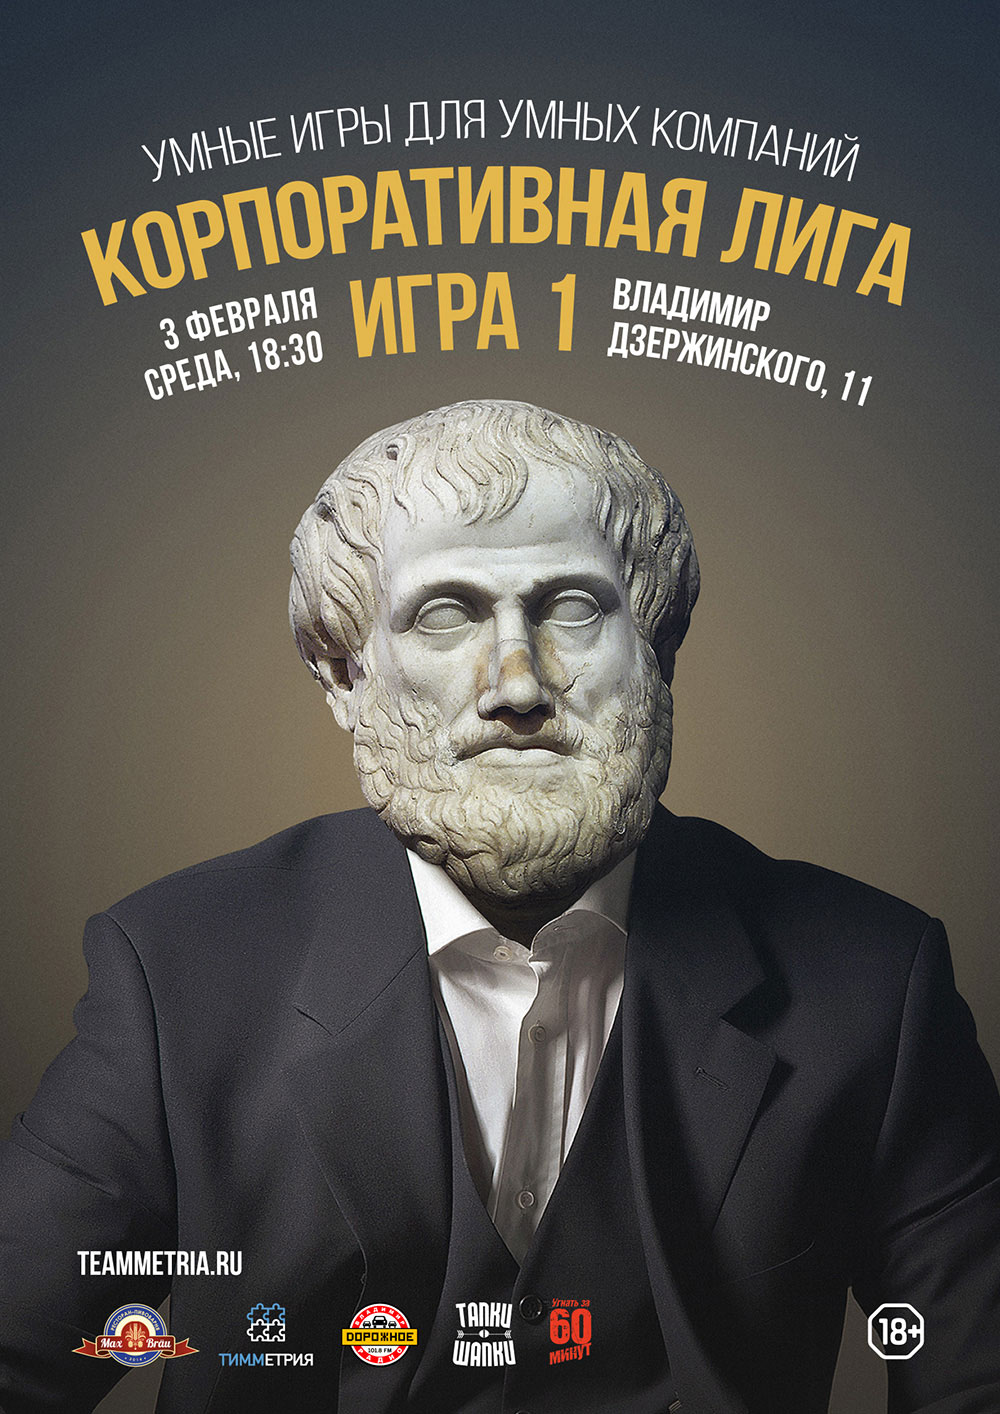 Постер с Аристотелем